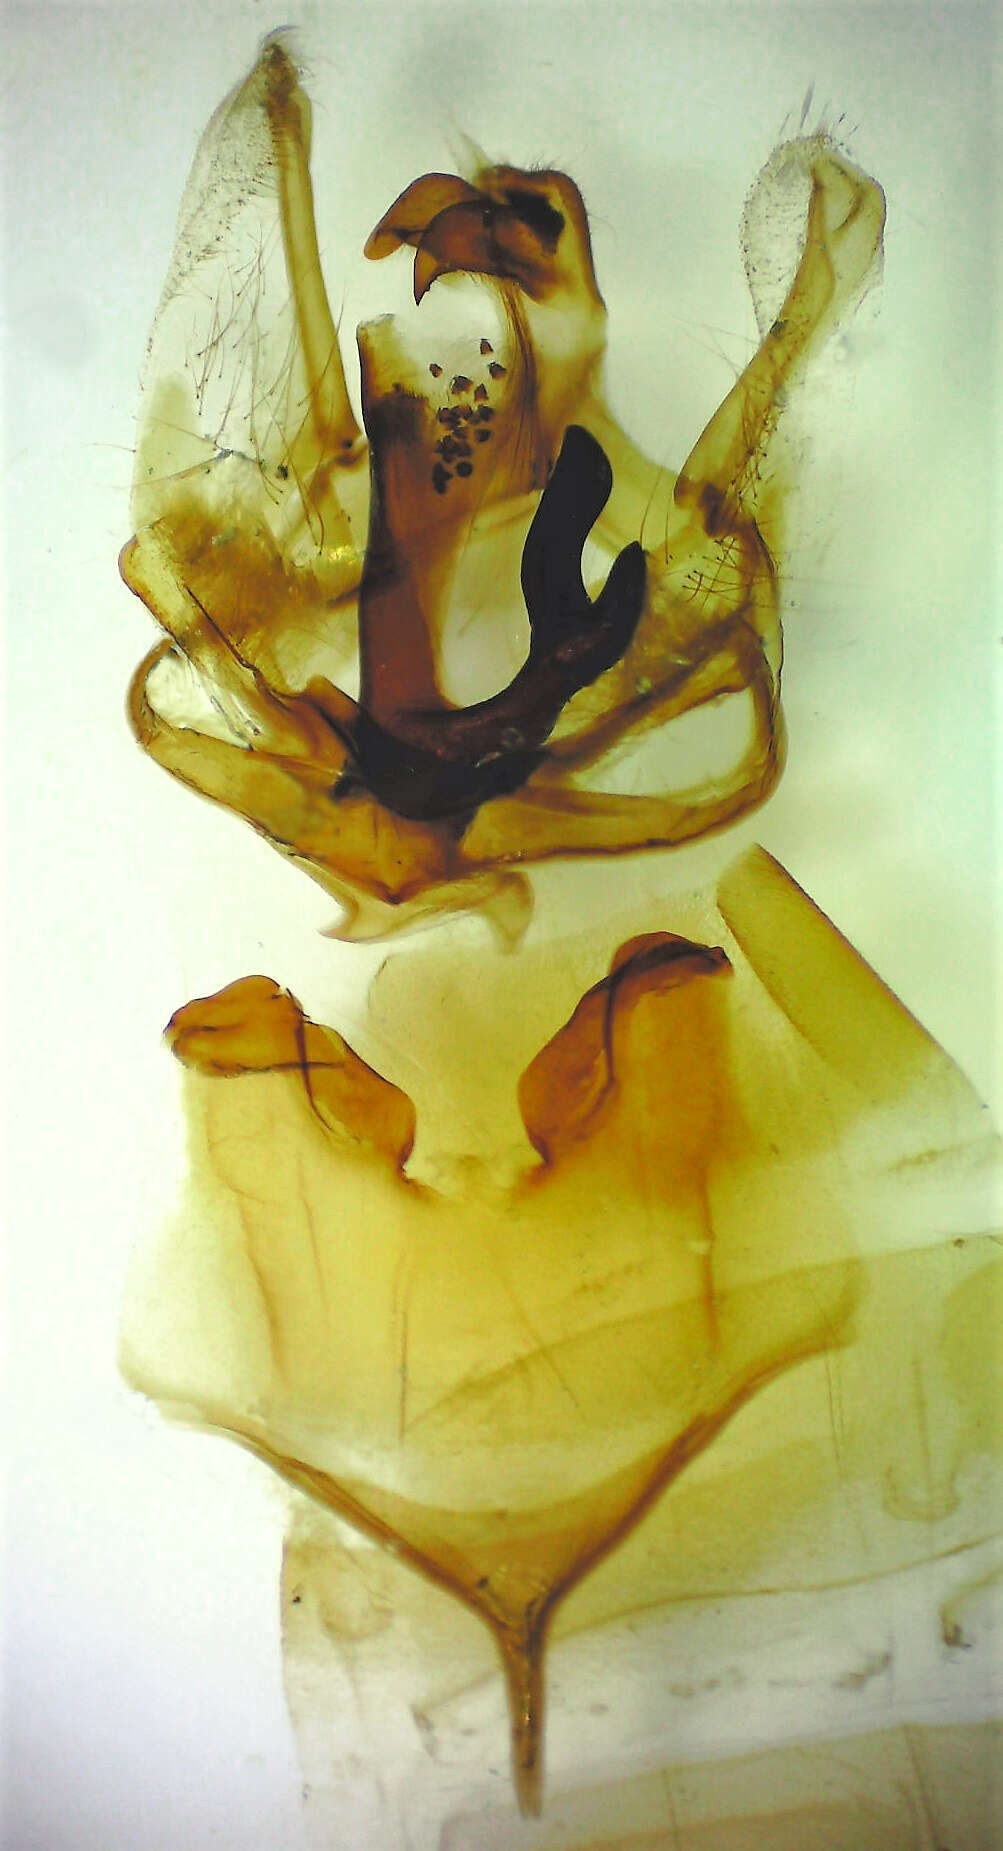 Image of Orange-humped Mapleworm